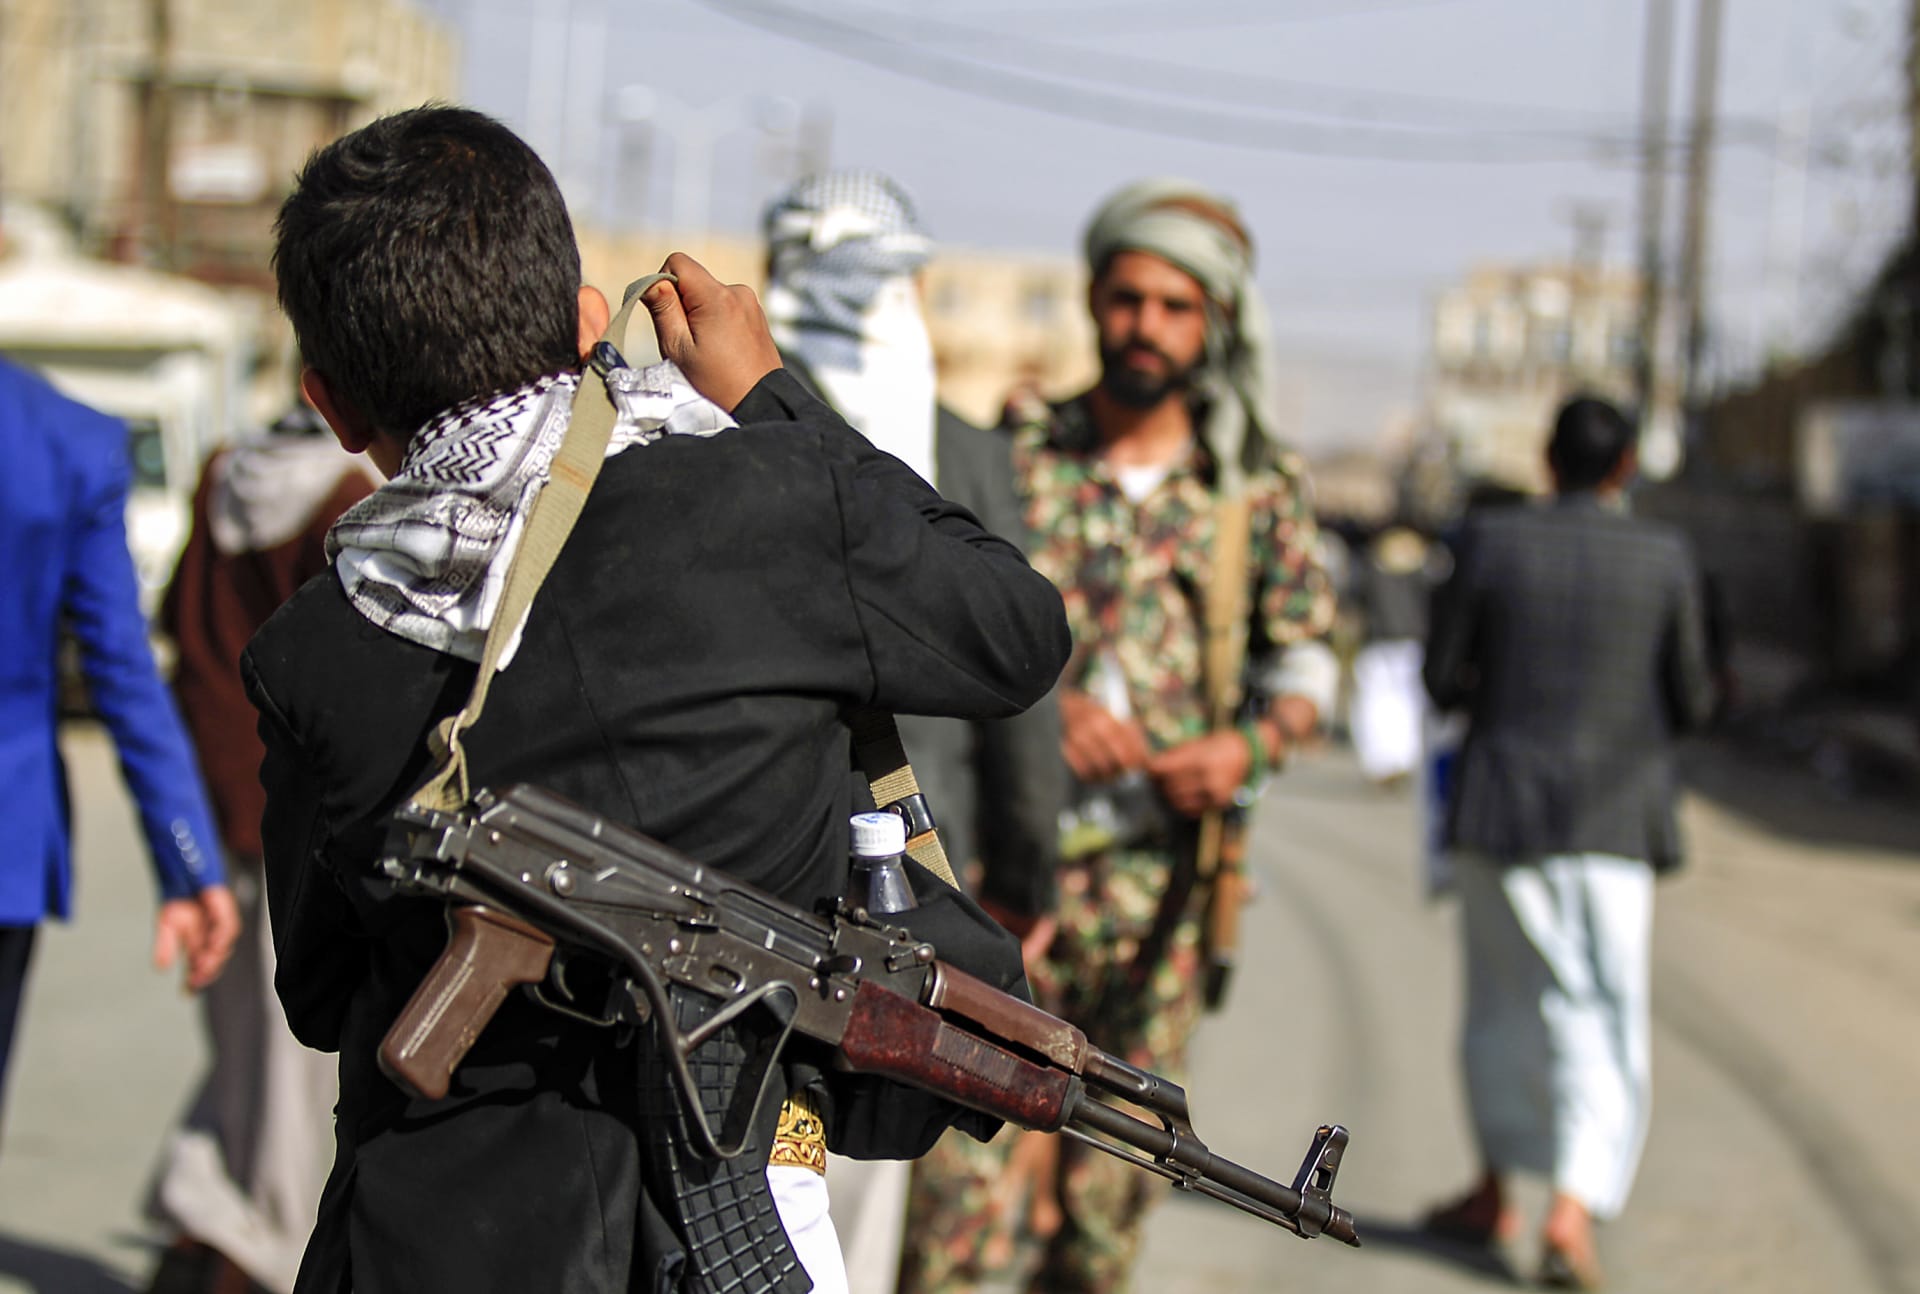 التحالف السعودي يكشف عن عملية تدمير منظومة اتصالات للحوثيين: يستخدمون الوزارة بعمليات عدائية